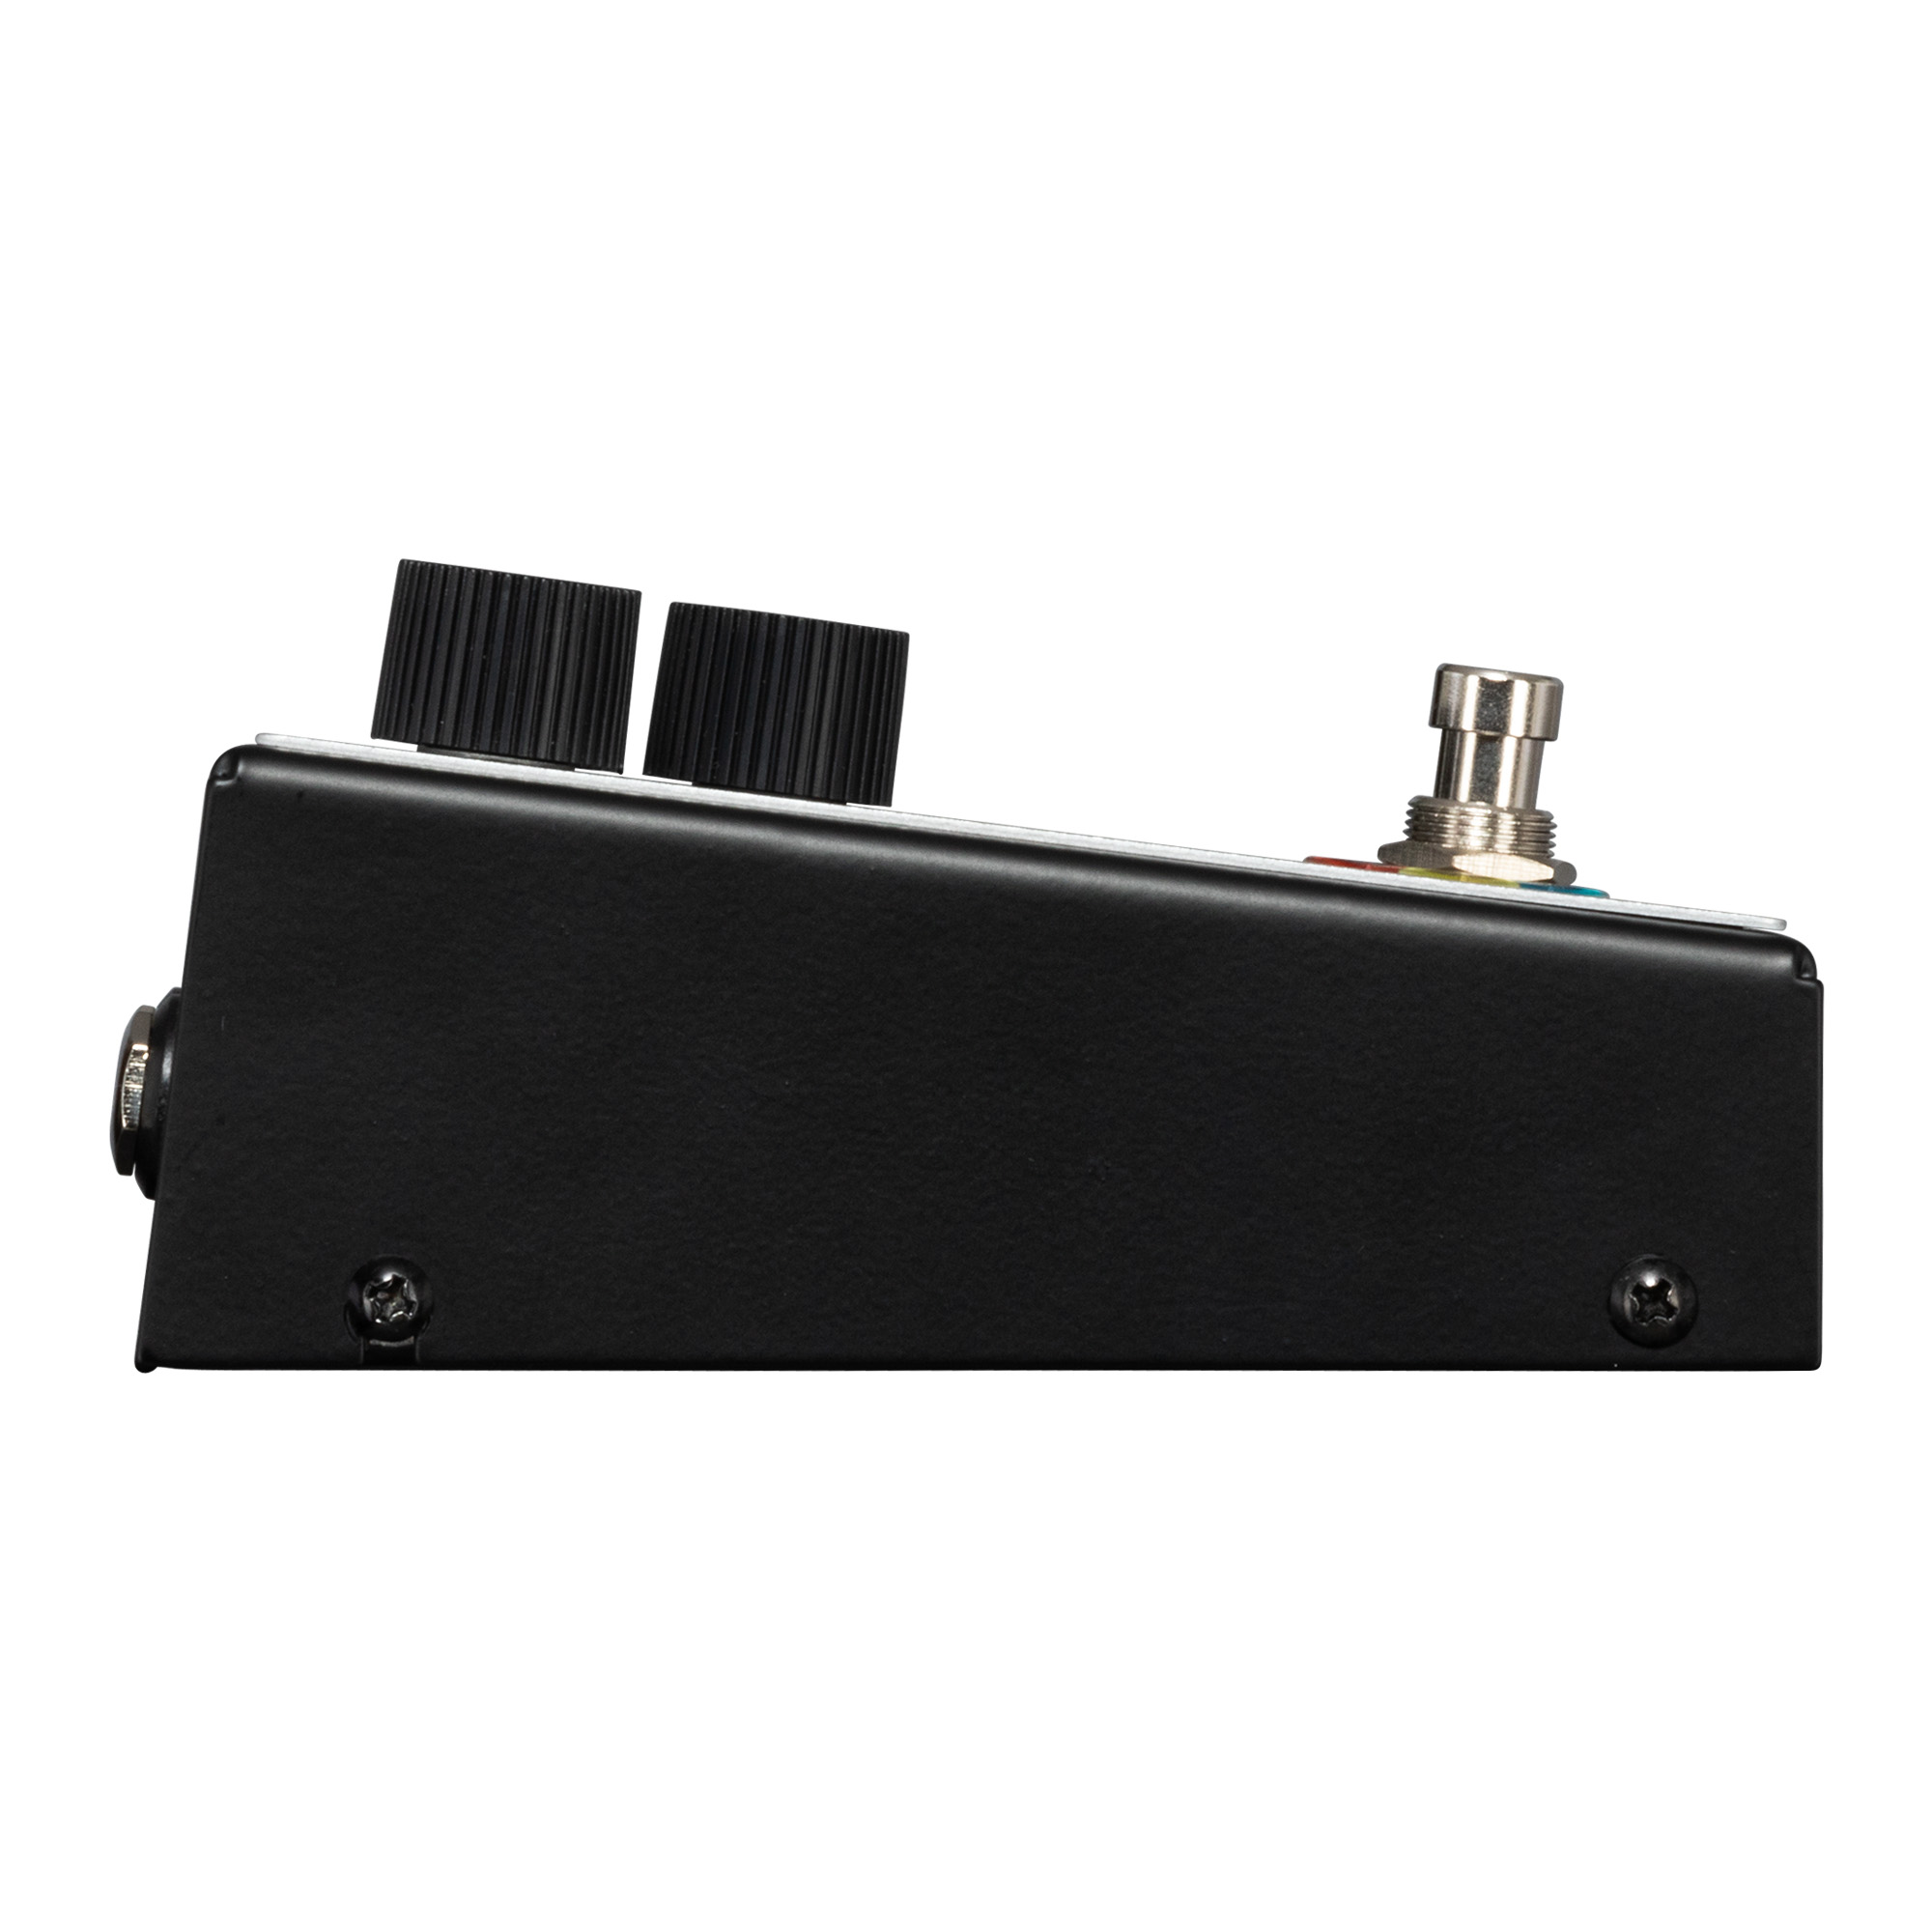 Maestro Envelope Filter - Pedal compresor / sustain / noise gate - Variation 3